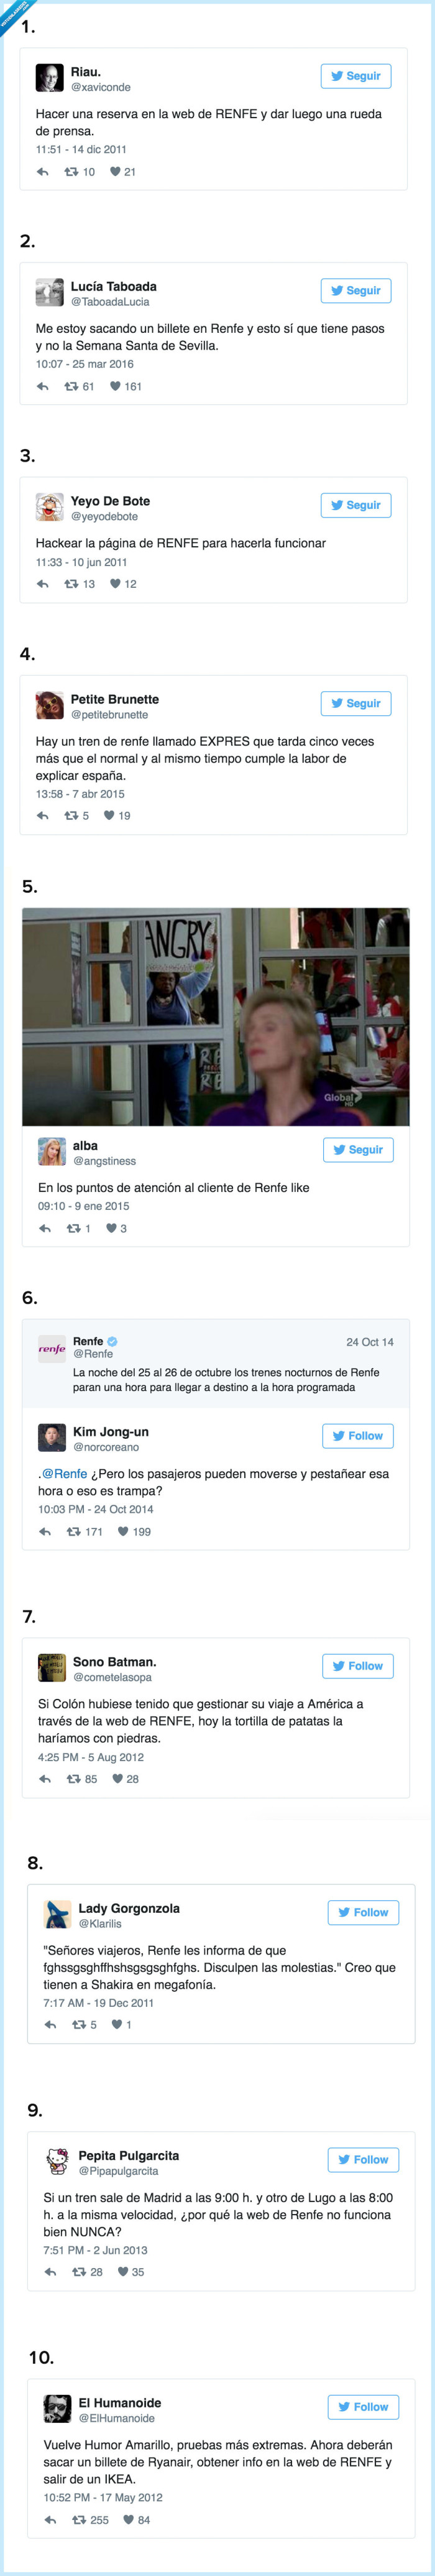 445648 - Los mejores 10 tweets que resumen la web de Renfe